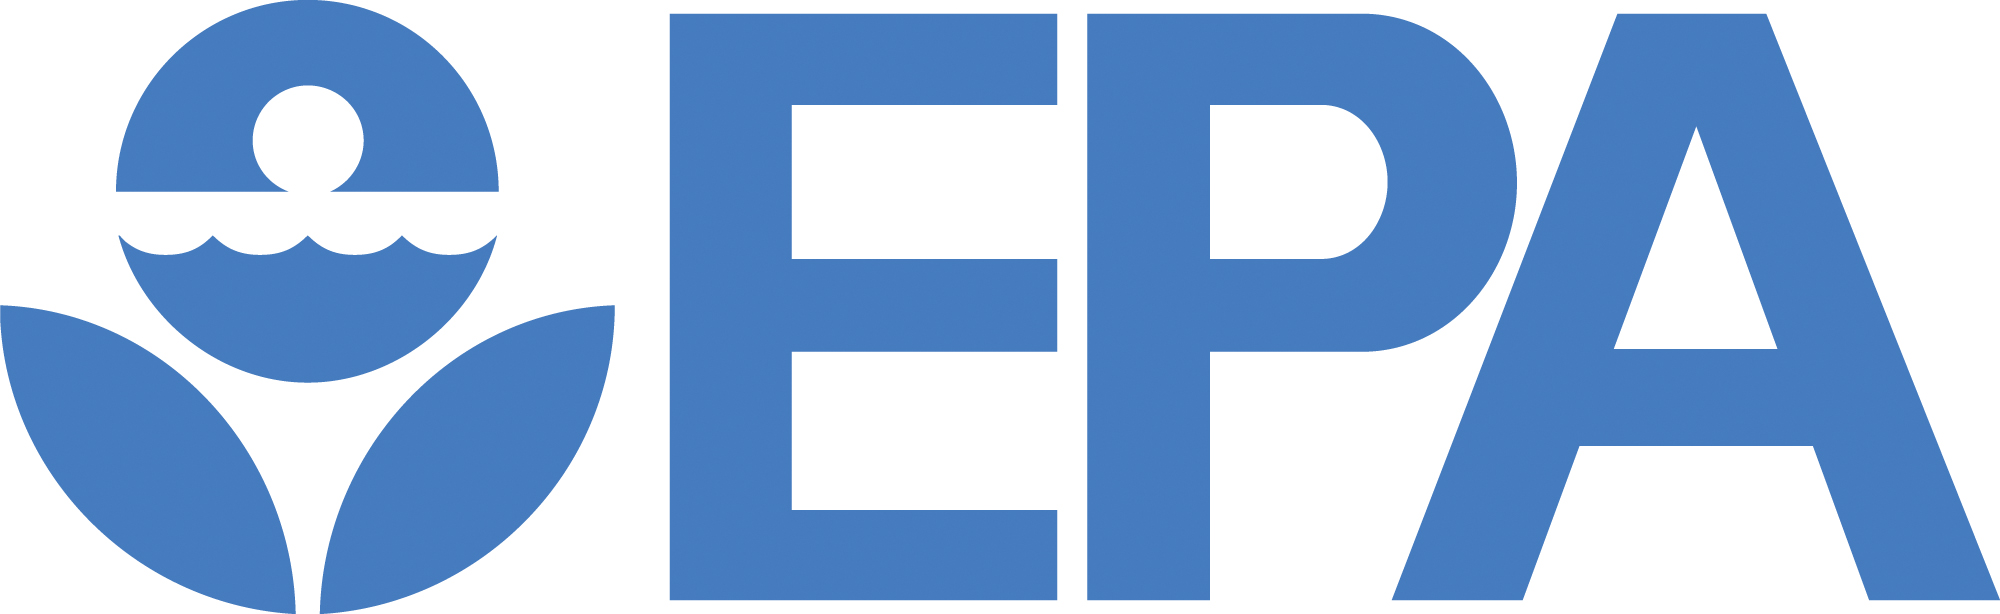 EPA blue logo